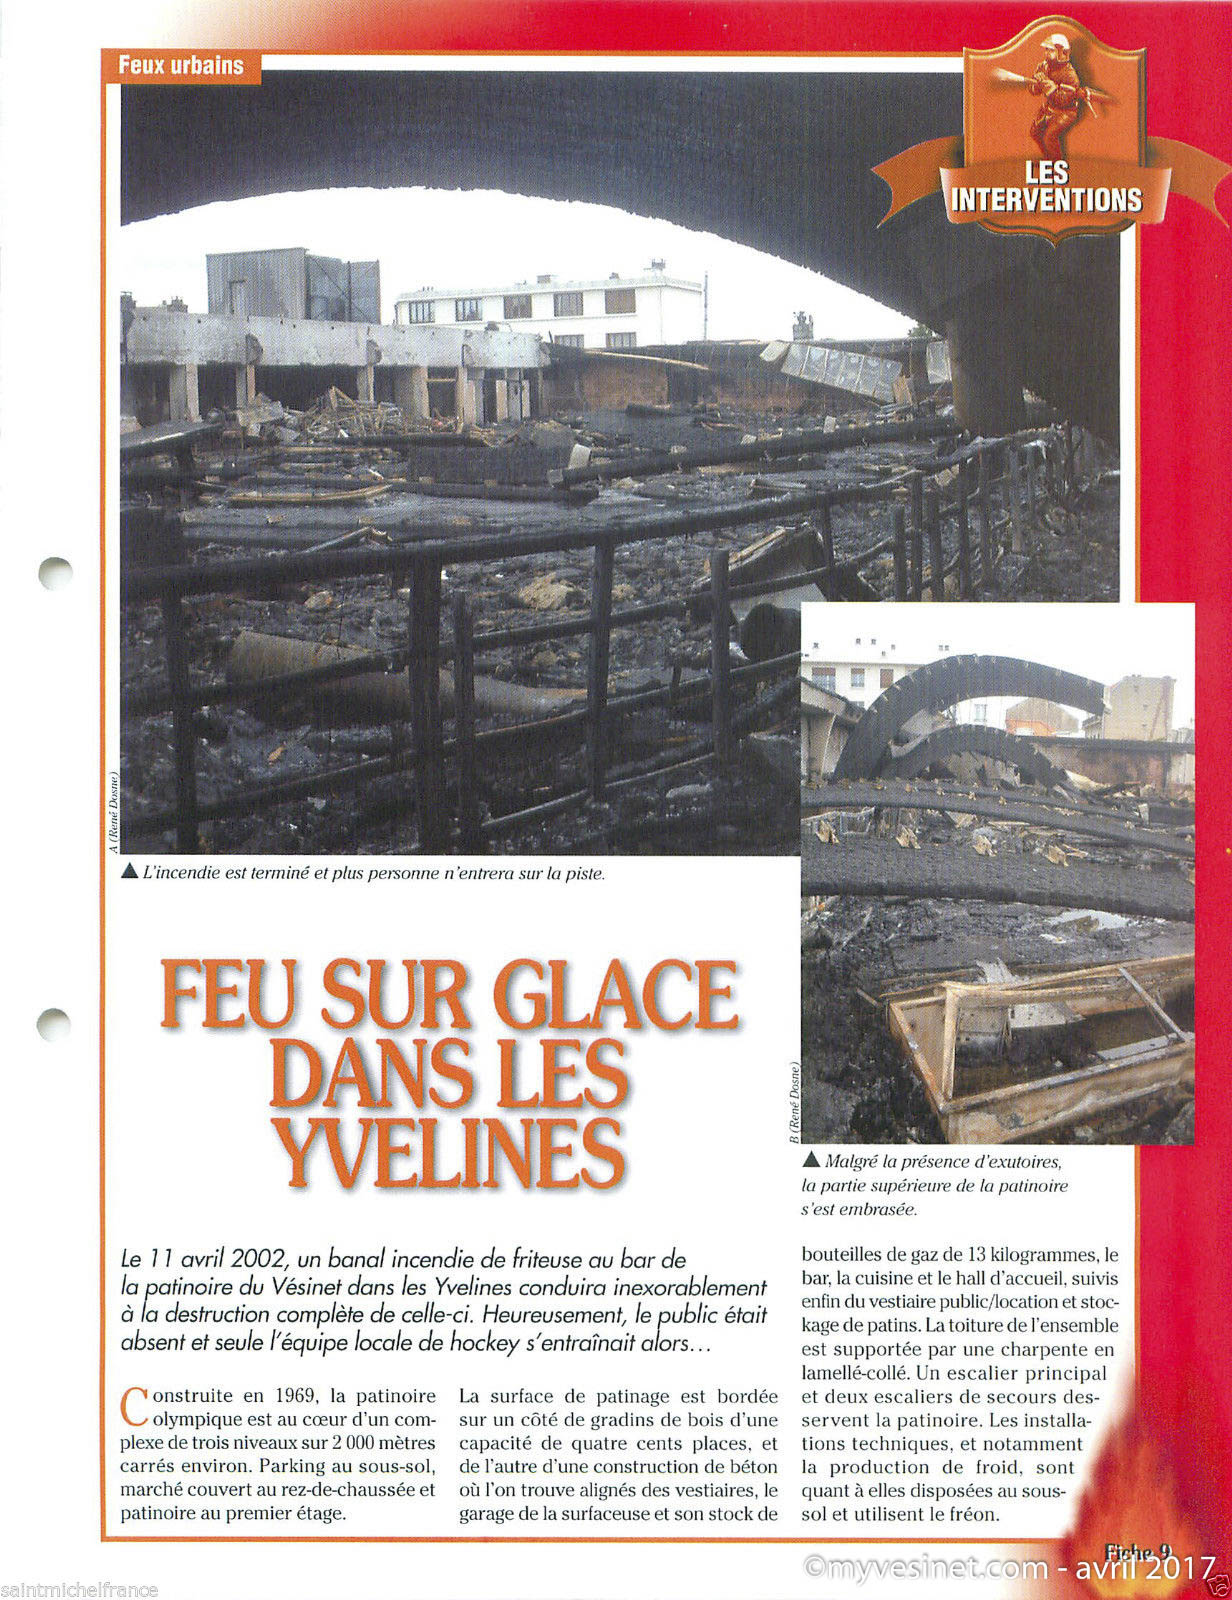 Article de René Dosne dans la revue Face au Risque « Feu sur glace dans les Yvelines » daté du 01.12.2002